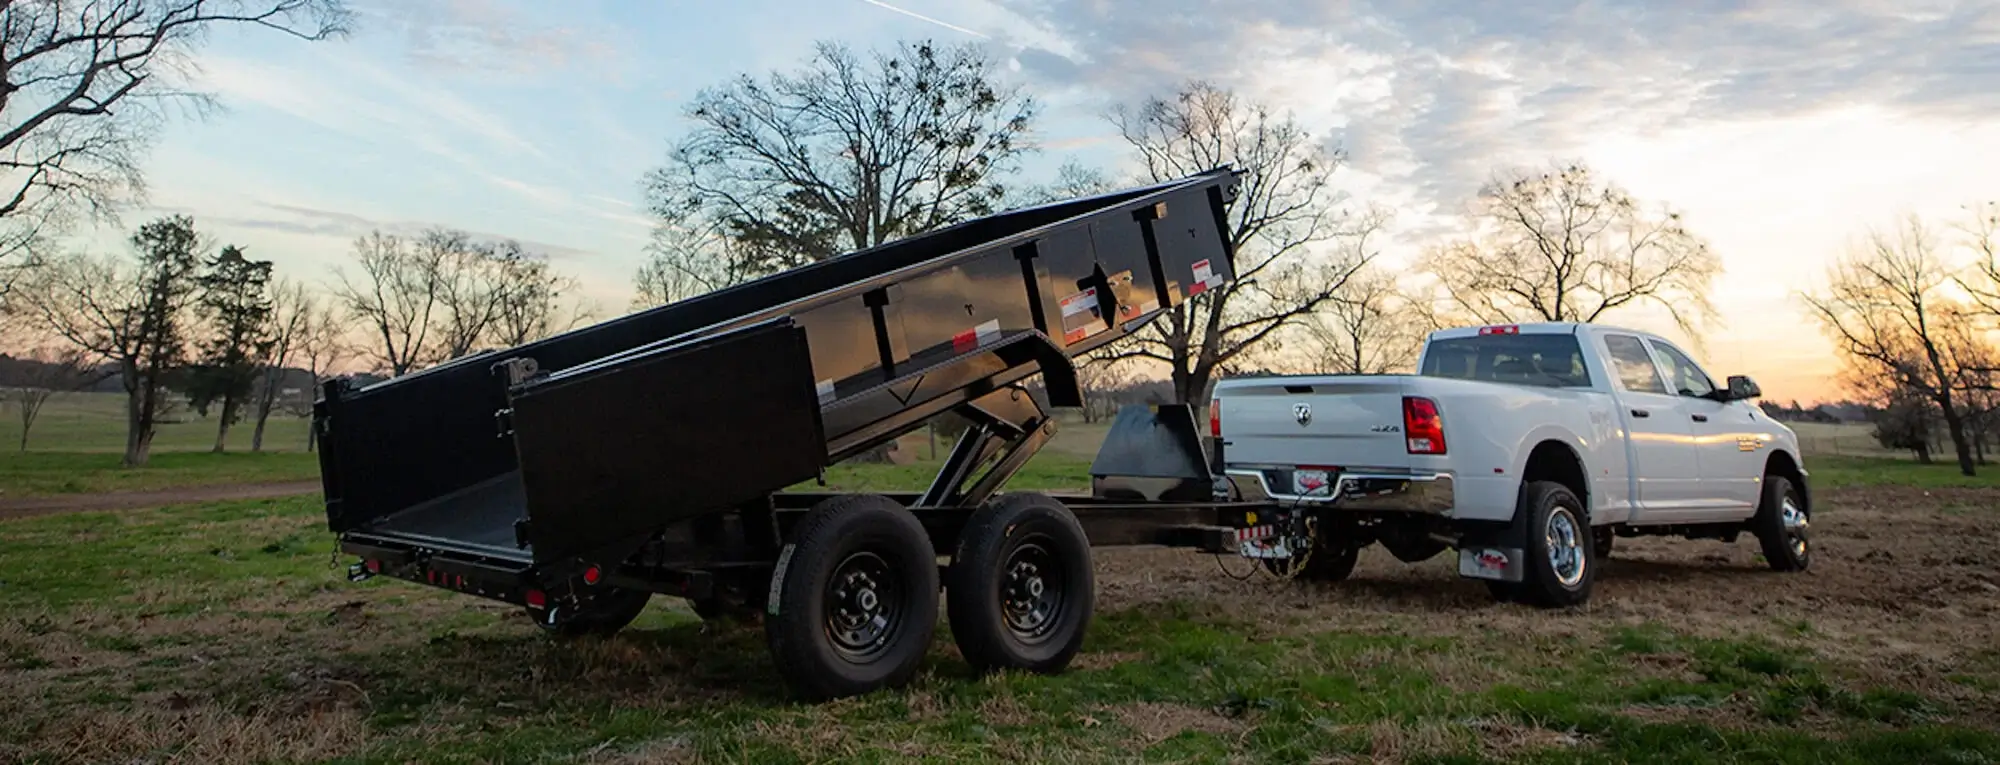 Truck towing a dump trailer at dusk